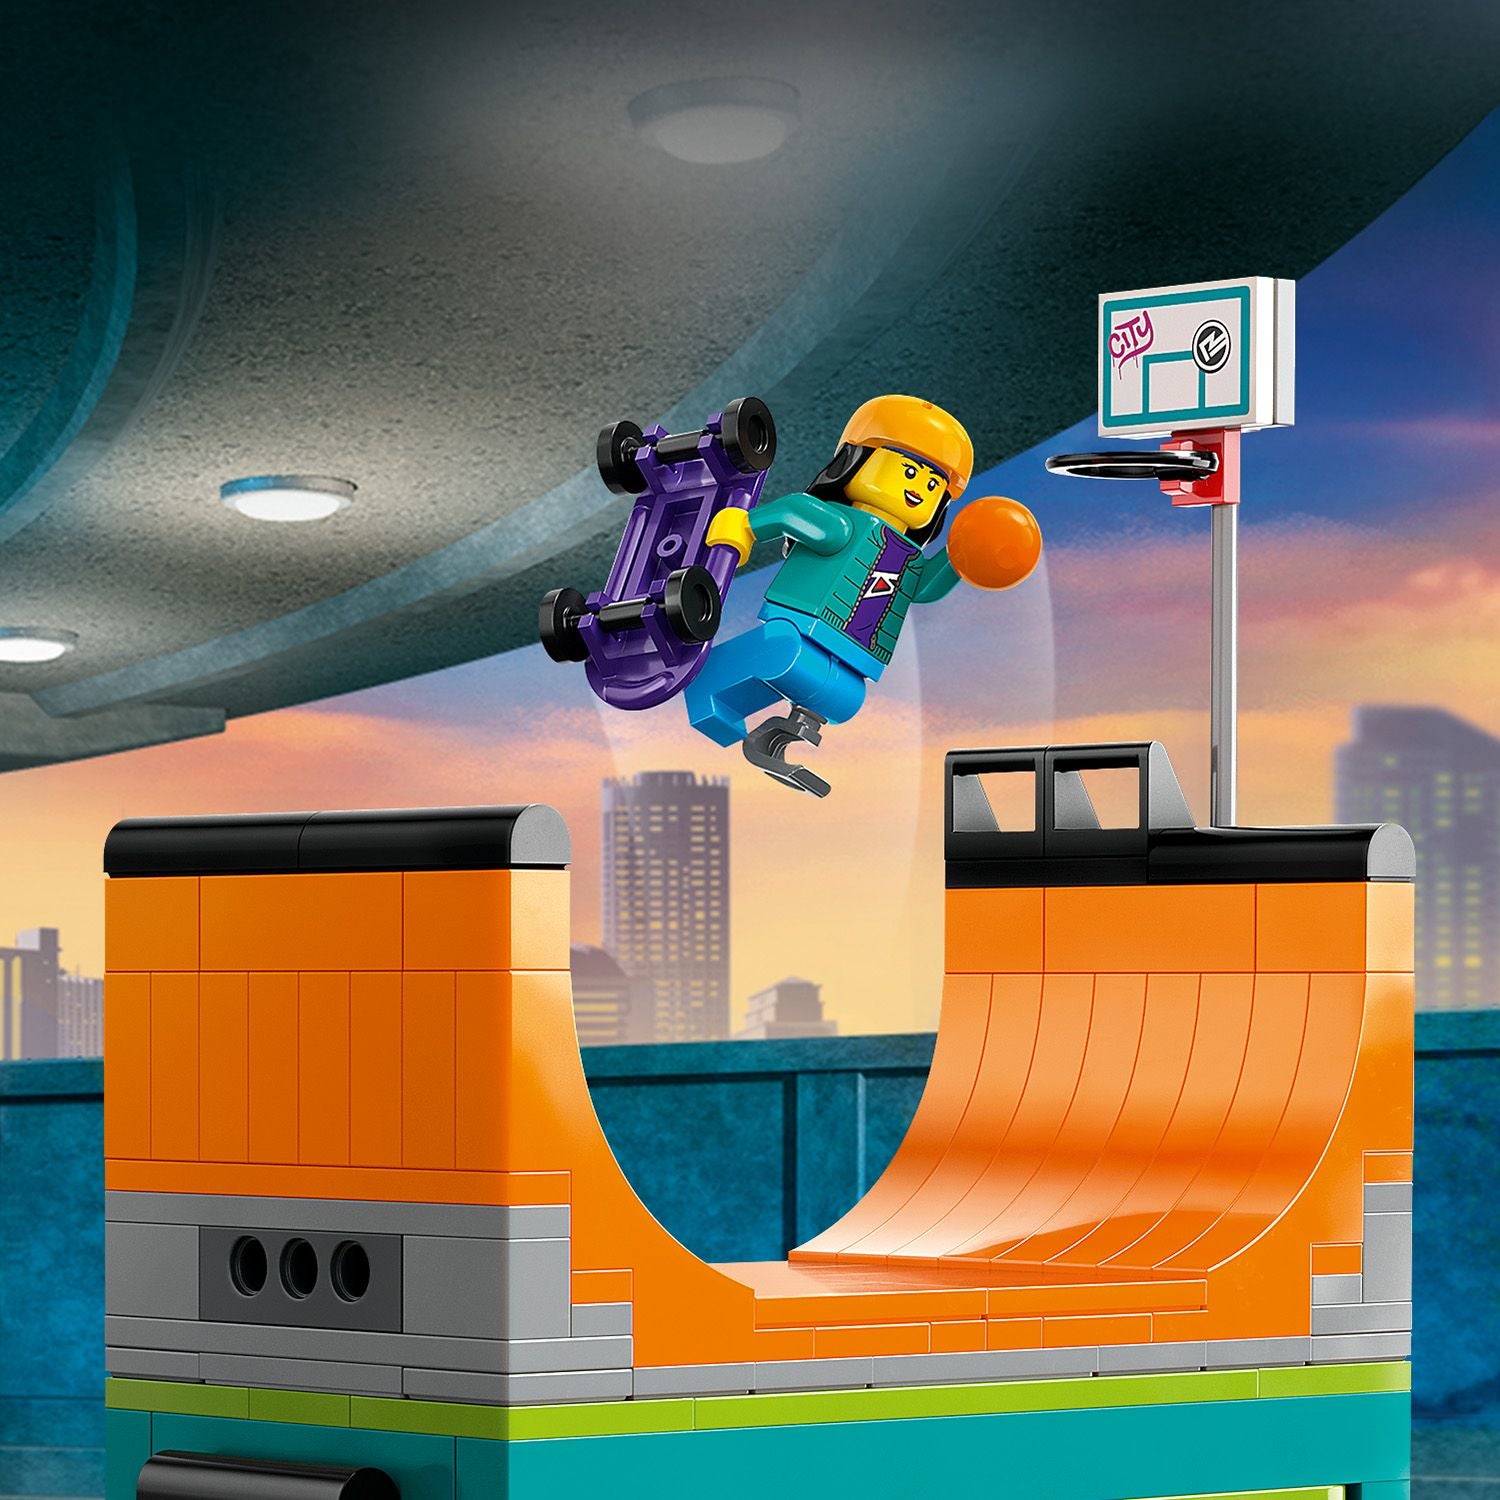 60364 - LEGO My City - Skate Park urbano